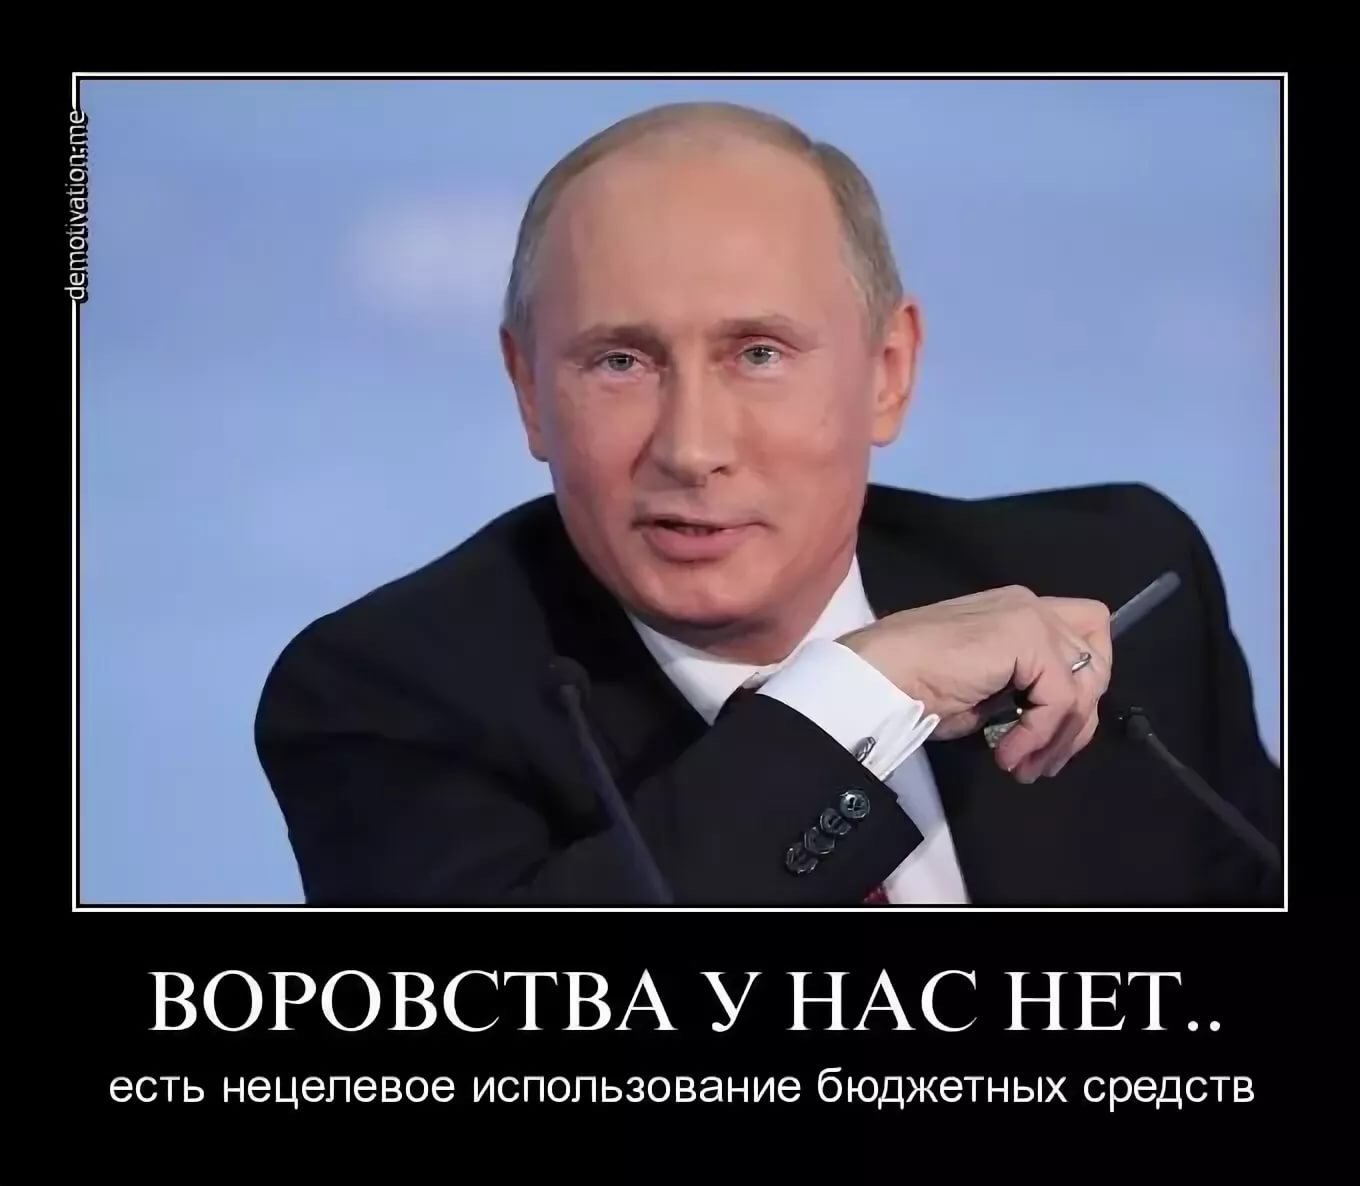 У народа есть вопросы. В России воруют. Демотиваторы против Путина. Мемы про Путина.